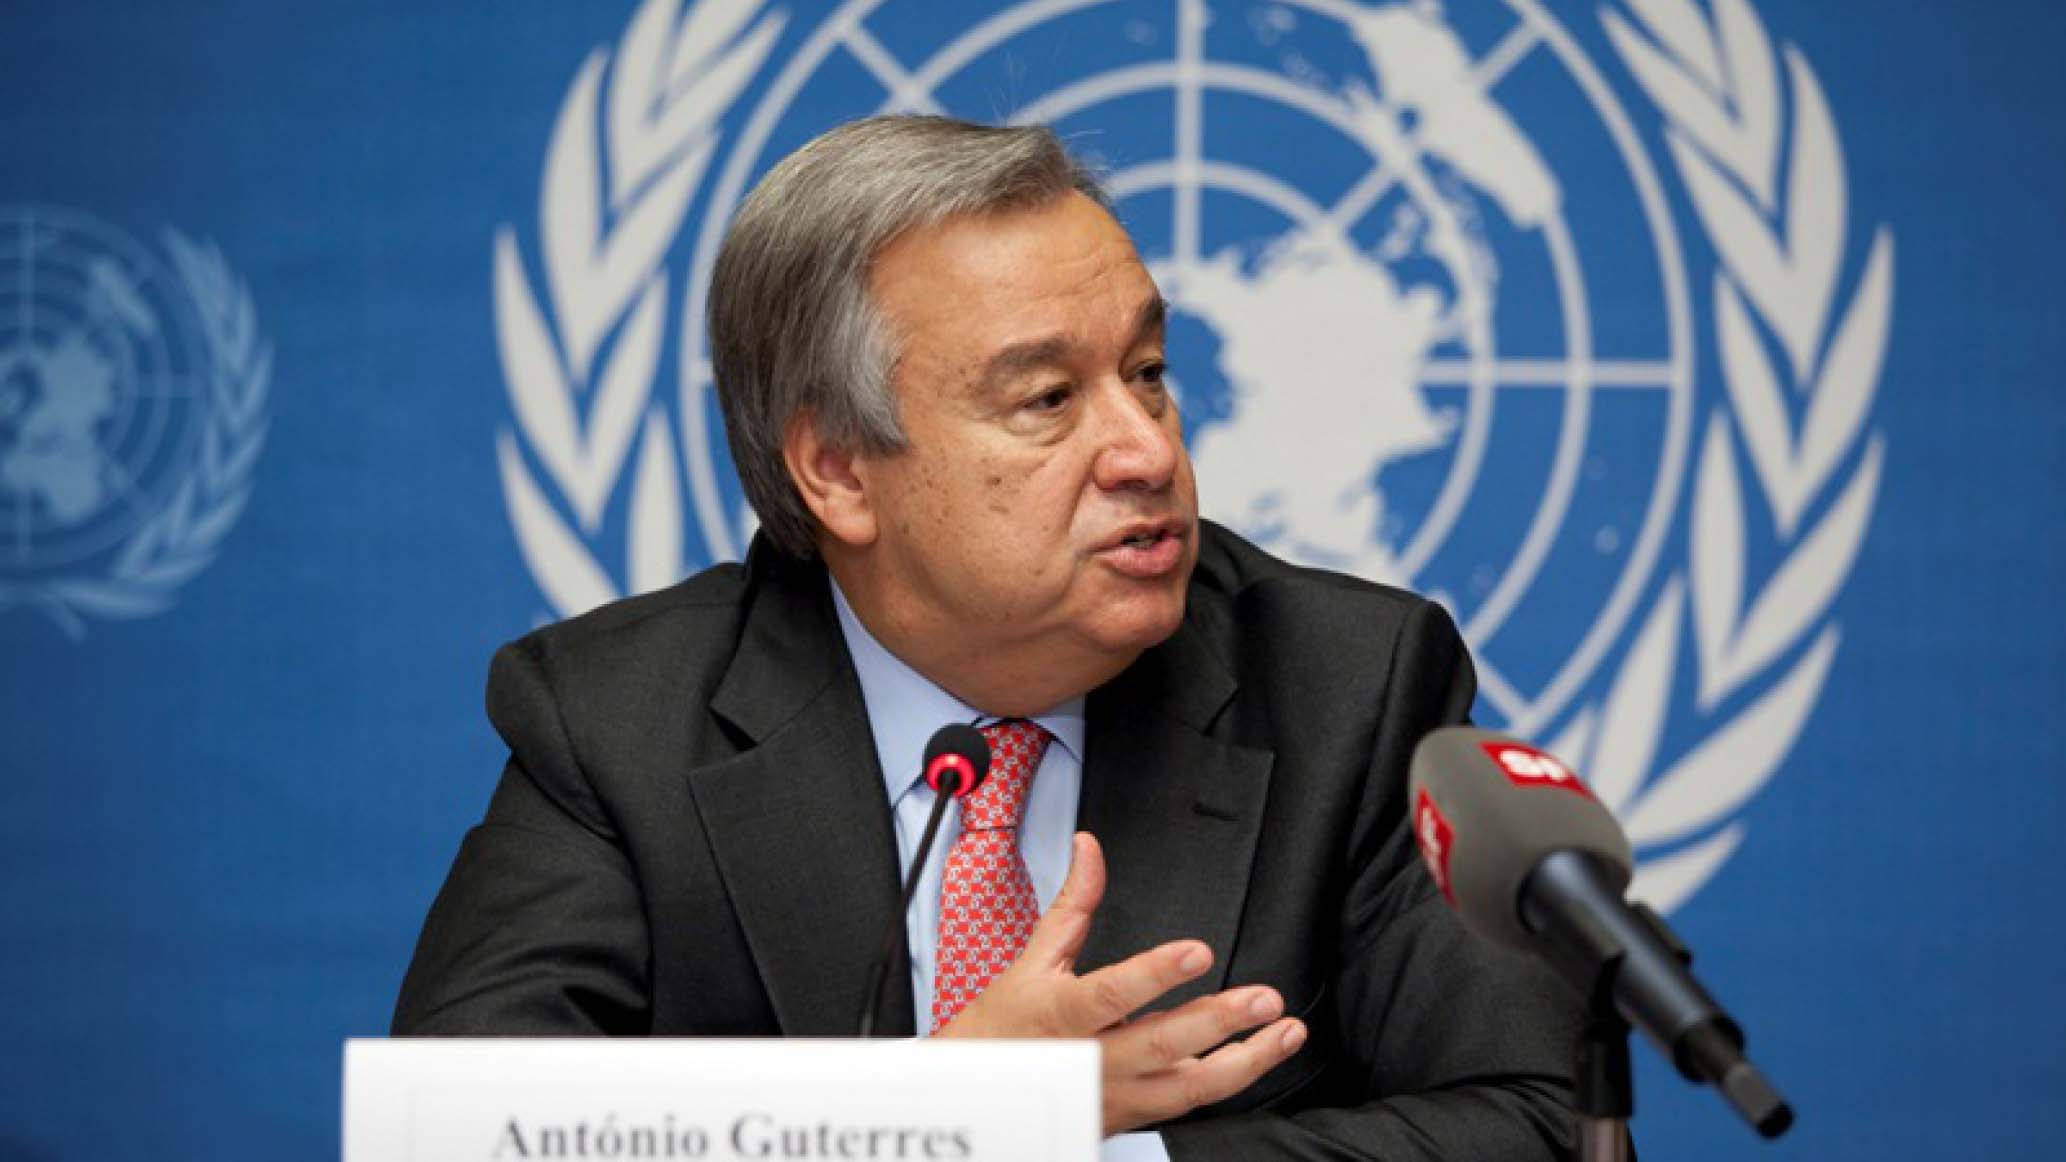 El secretario general de la ONU pidió a los responsables de las distintas partes apegarse a la constitución del país